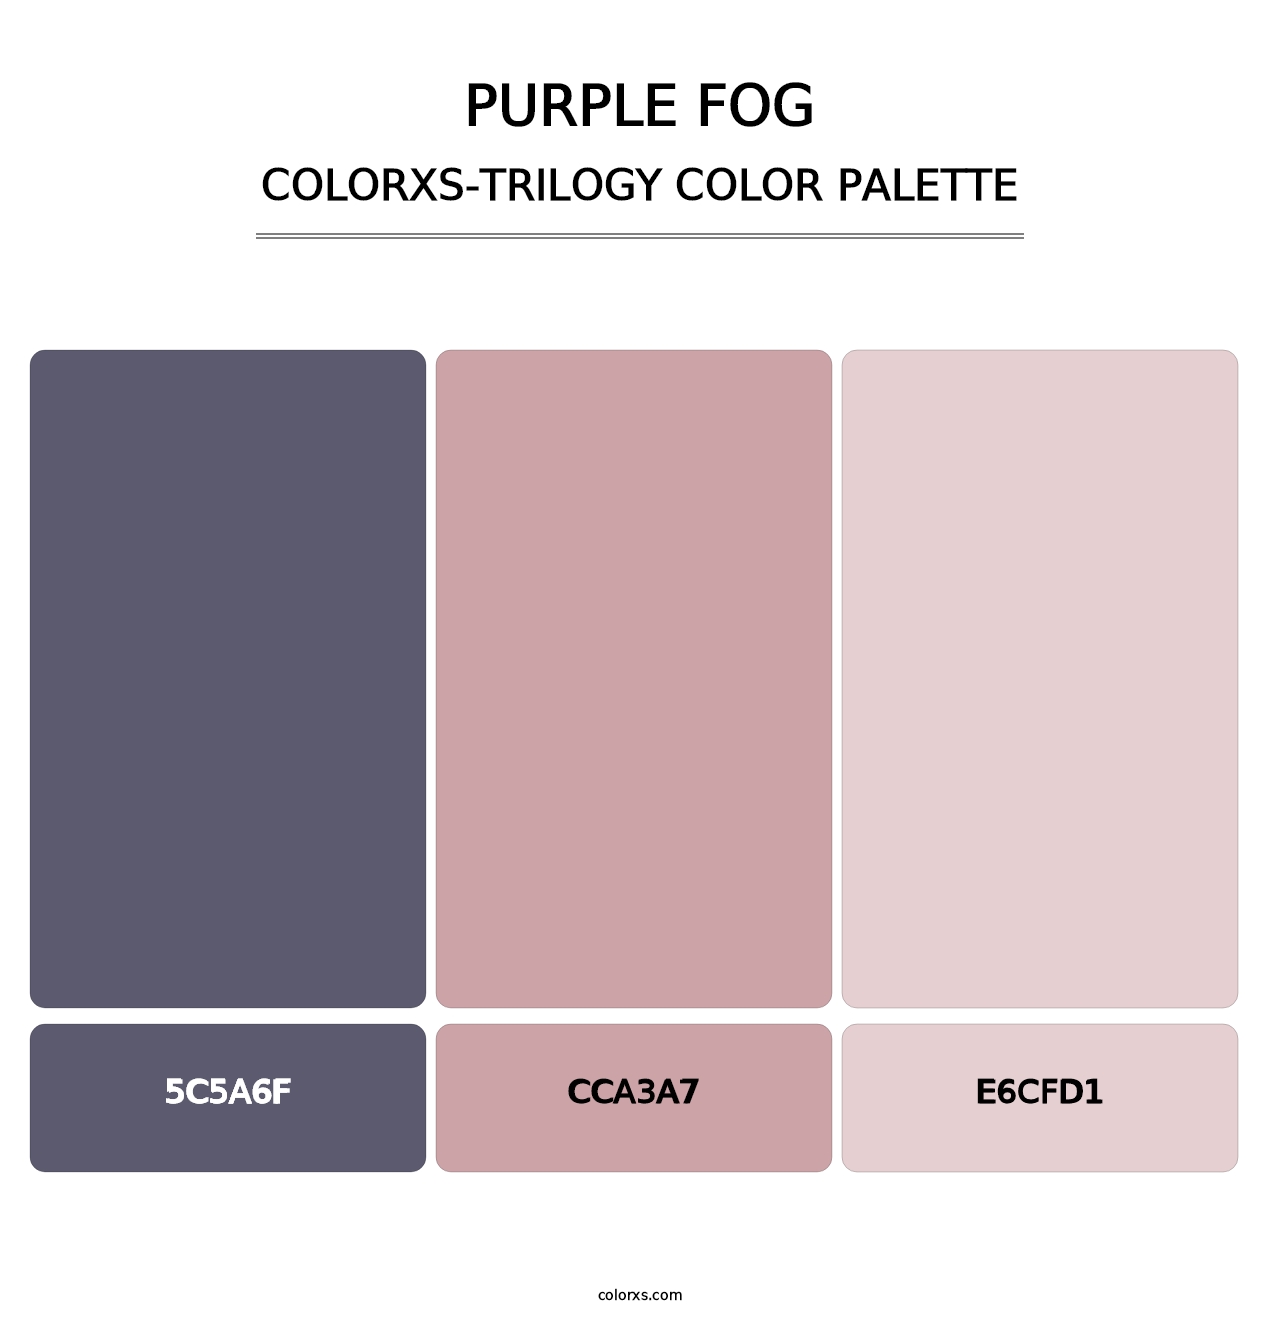 Purple Fog - Colorxs Trilogy Palette